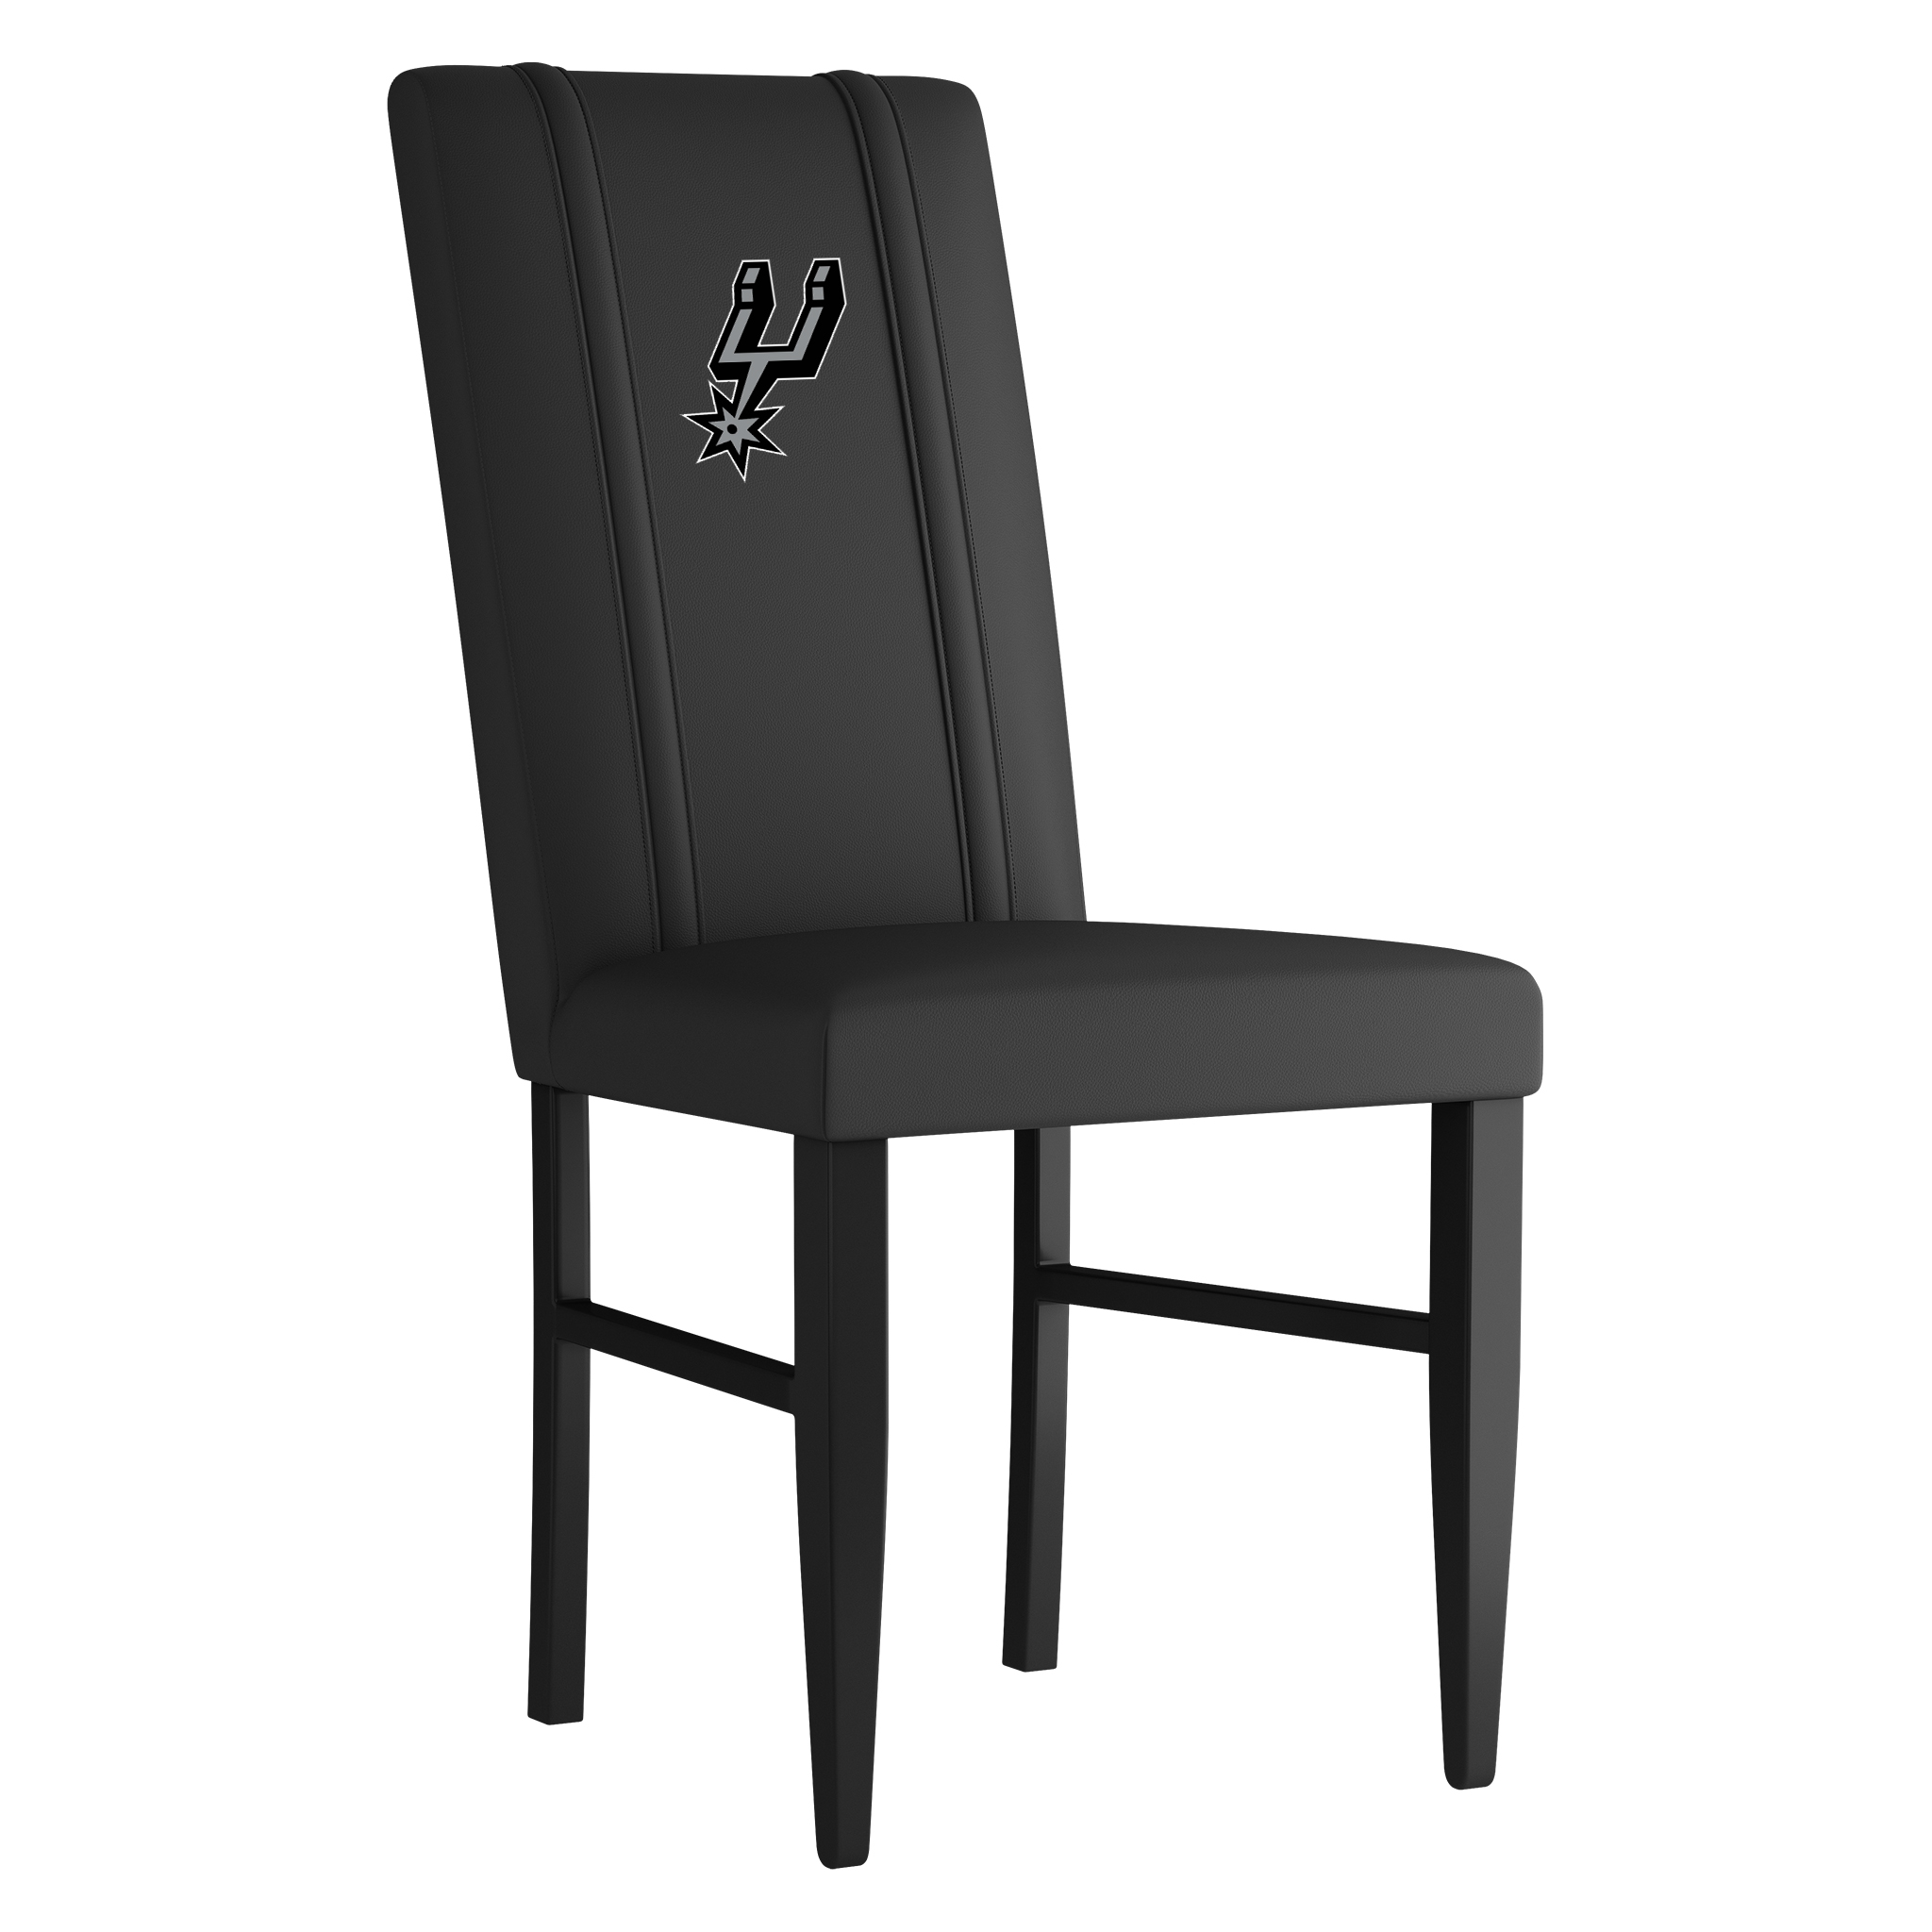 San Antonio Spurs Side Chair 2000 With San Antonio Spurs Primary Logo